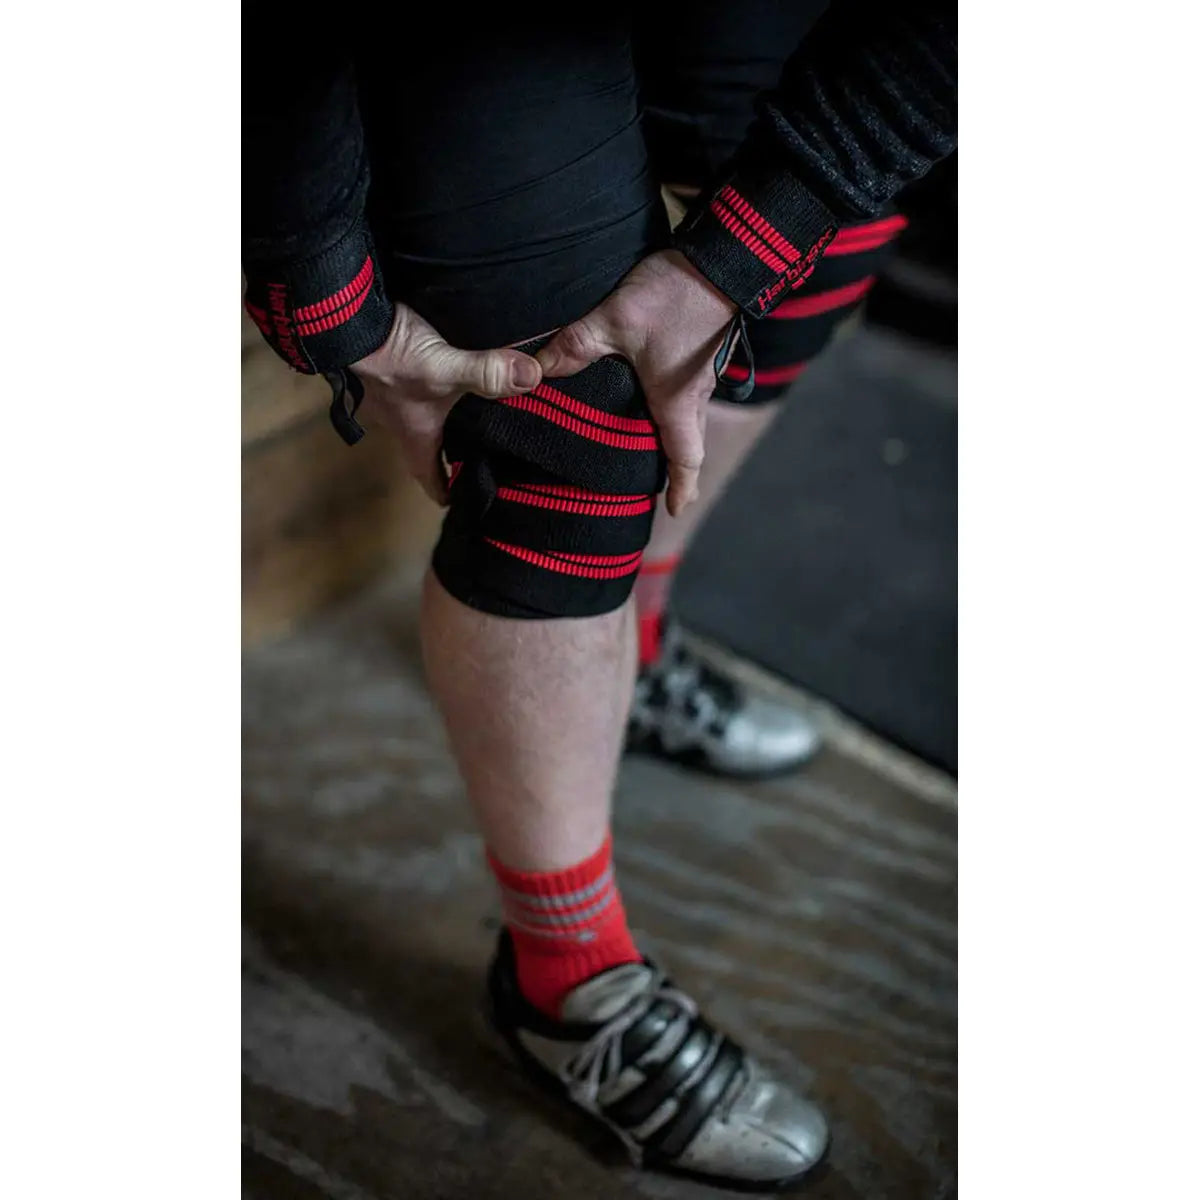 Harbinger Red Line Knee Wraps - Black Harbinger